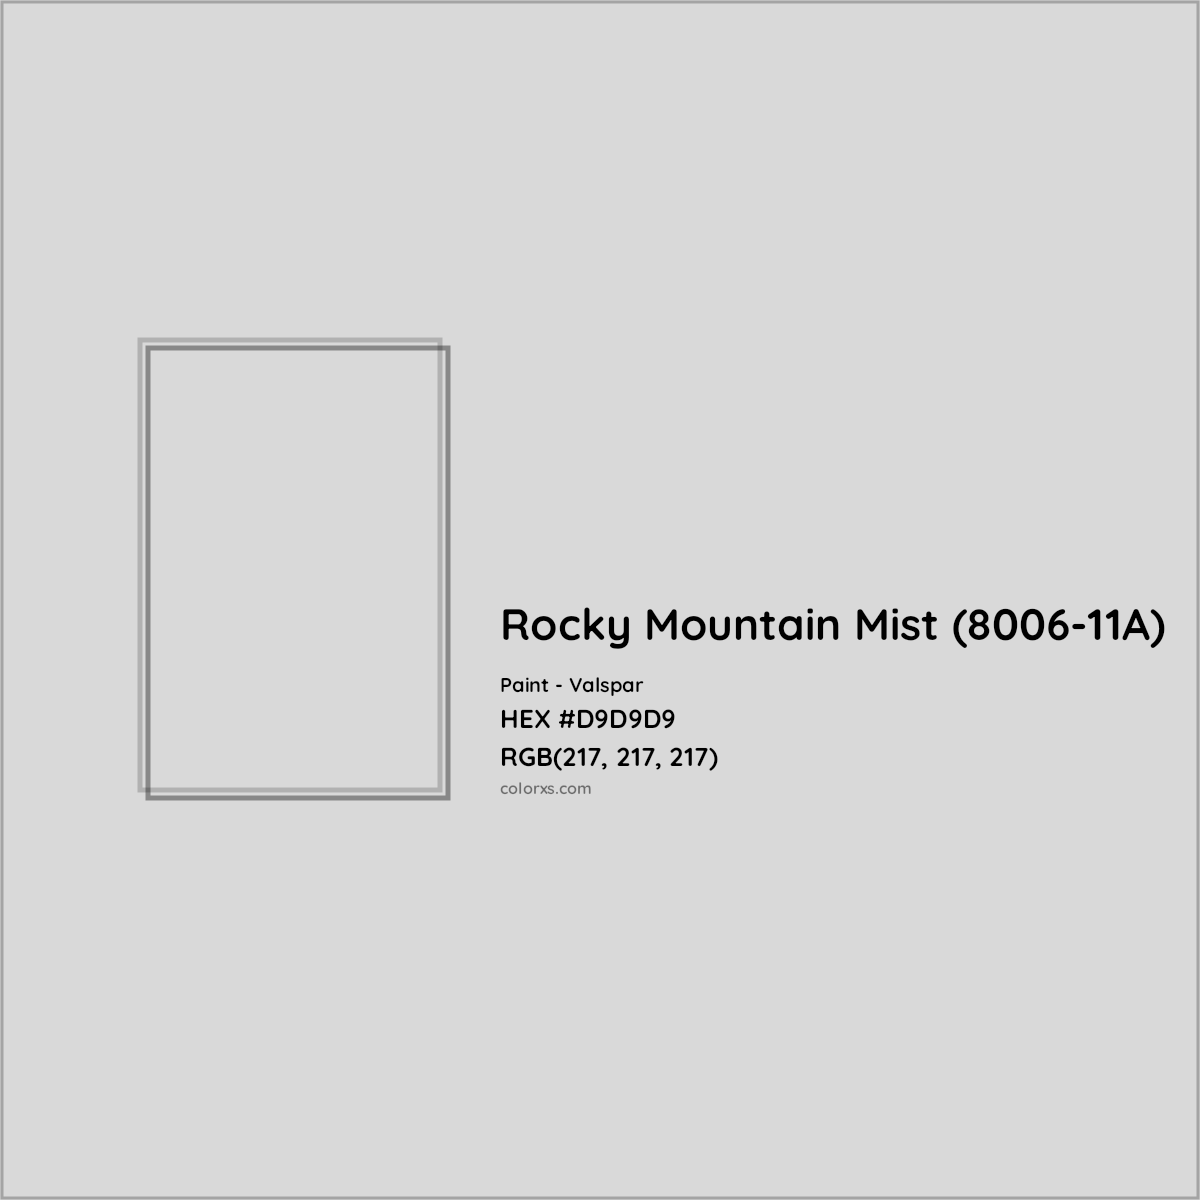 HEX #D9D9D9 Rocky Mountain Mist (8006-11A) Paint Valspar - Color Code